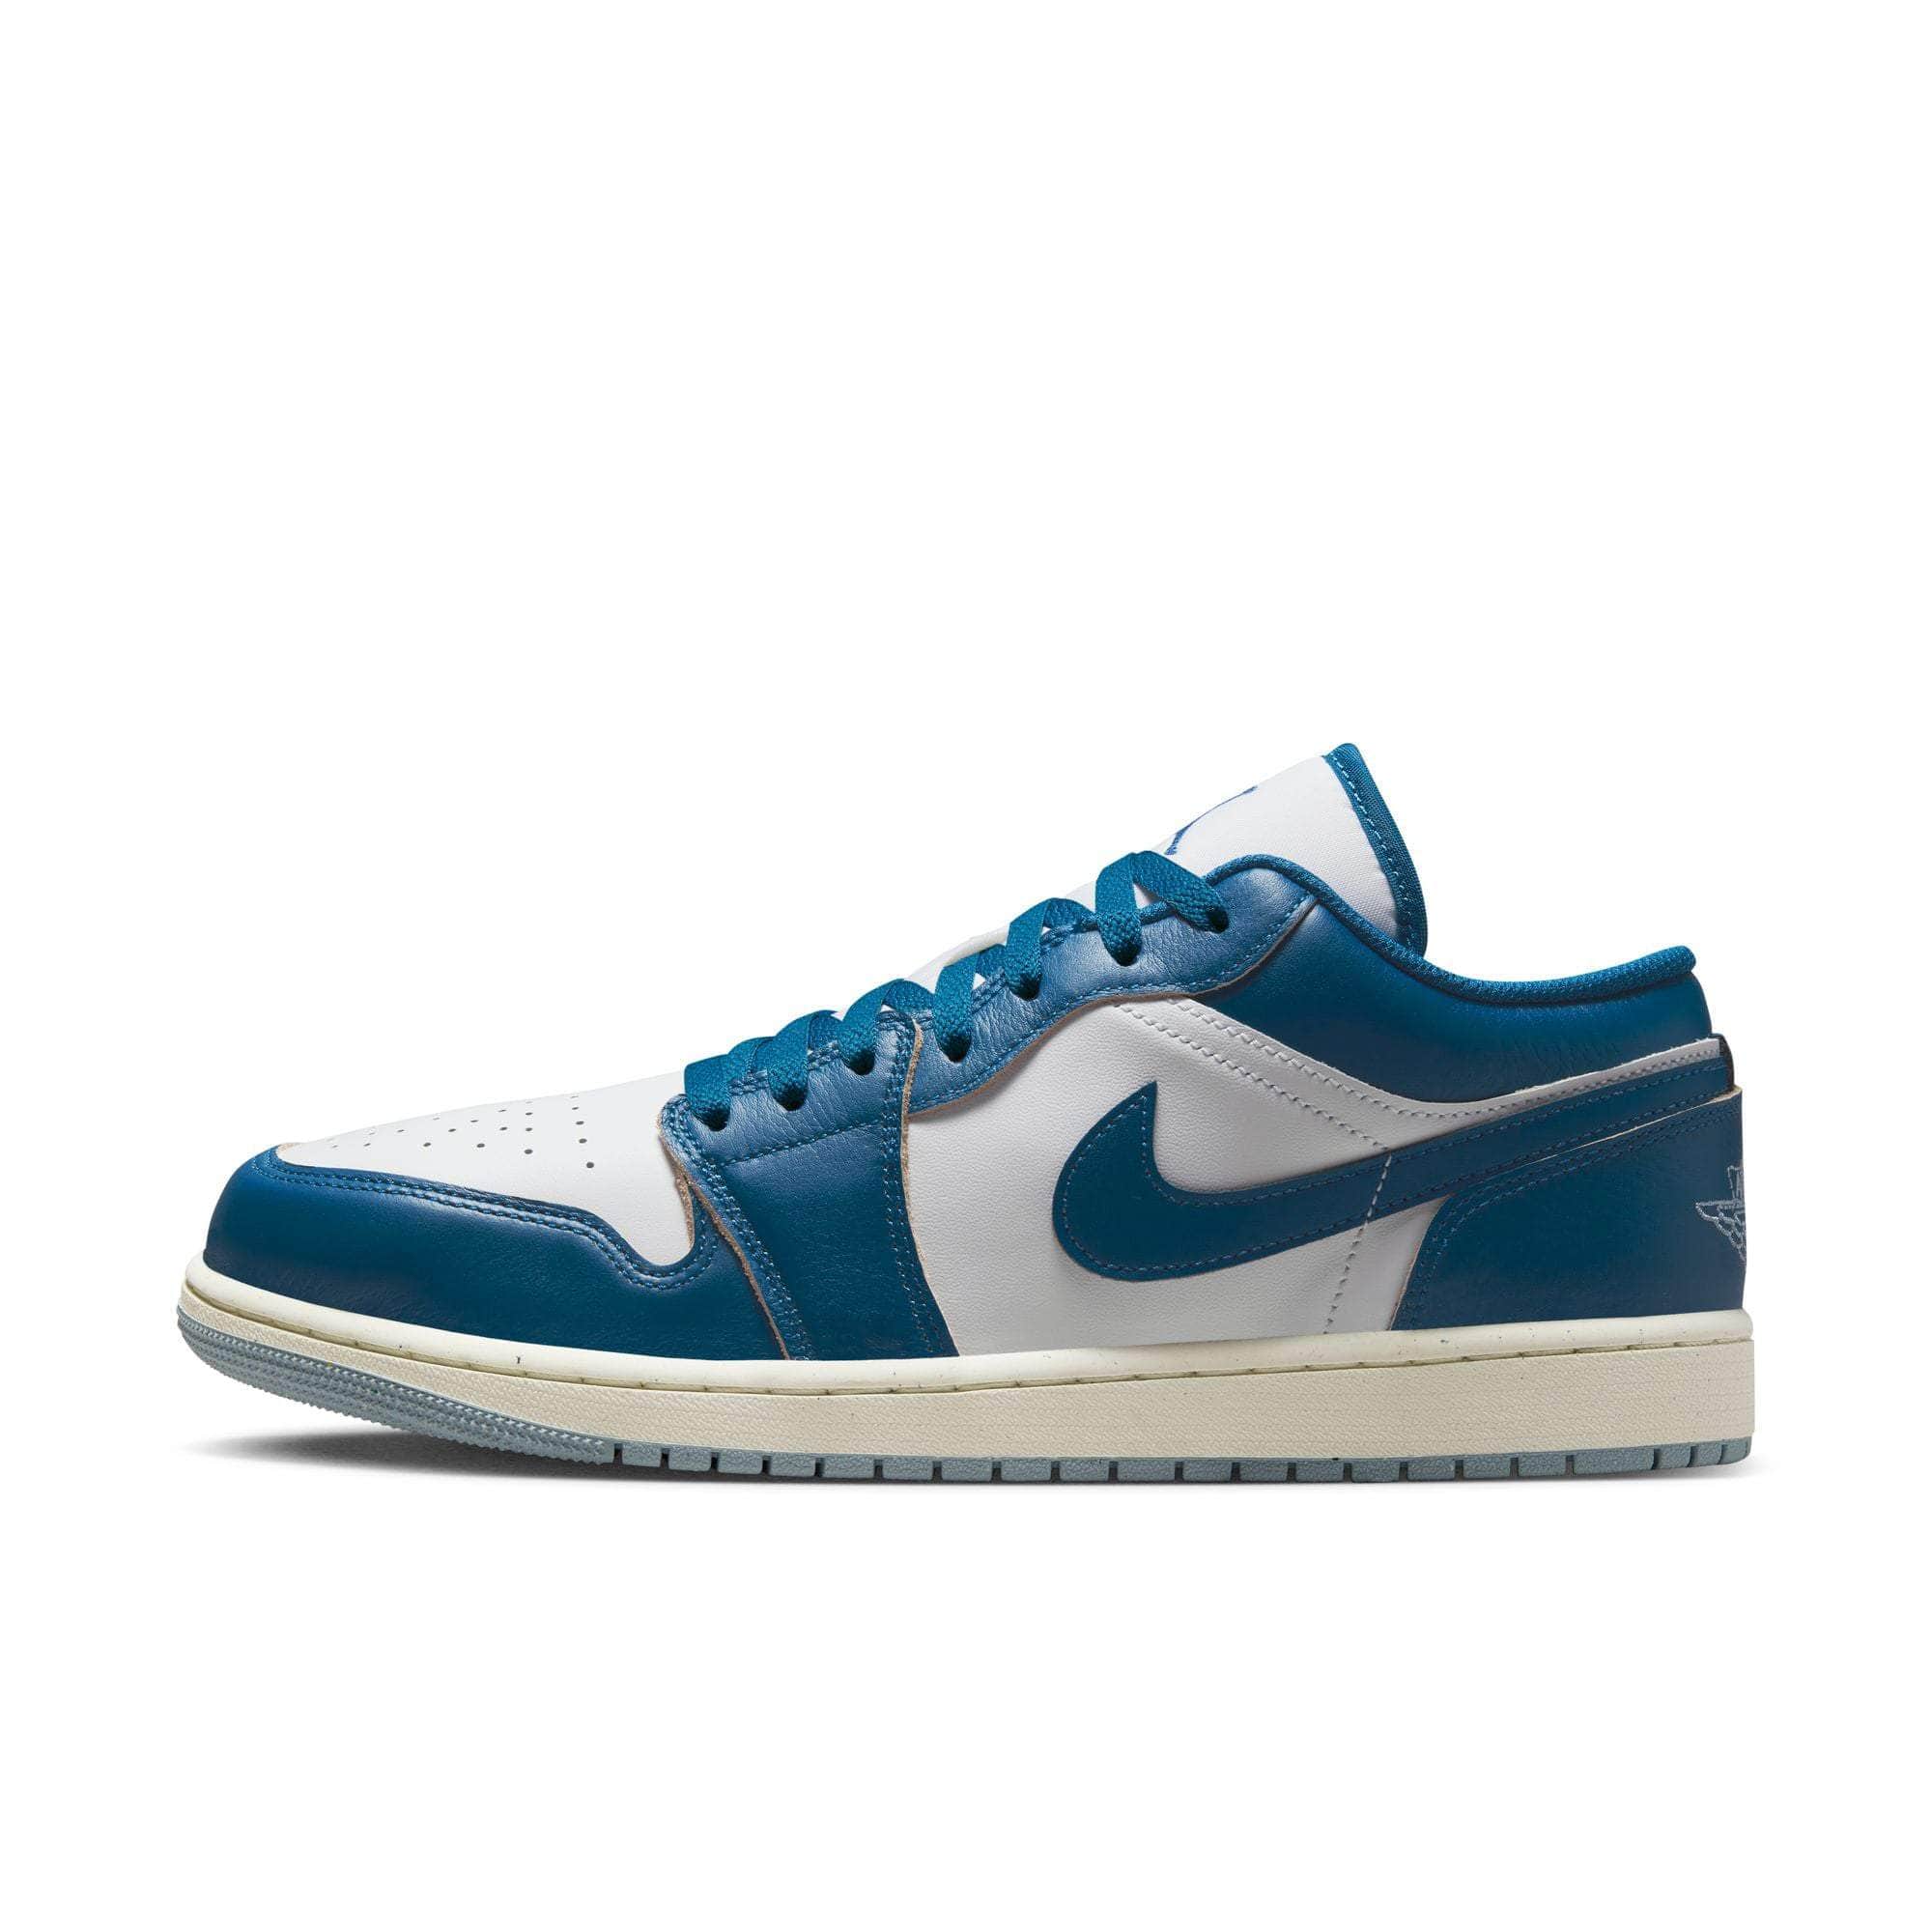 Air Jordan Footwear Air Jordan 1 Low SE “Industrial Blue” - Men's